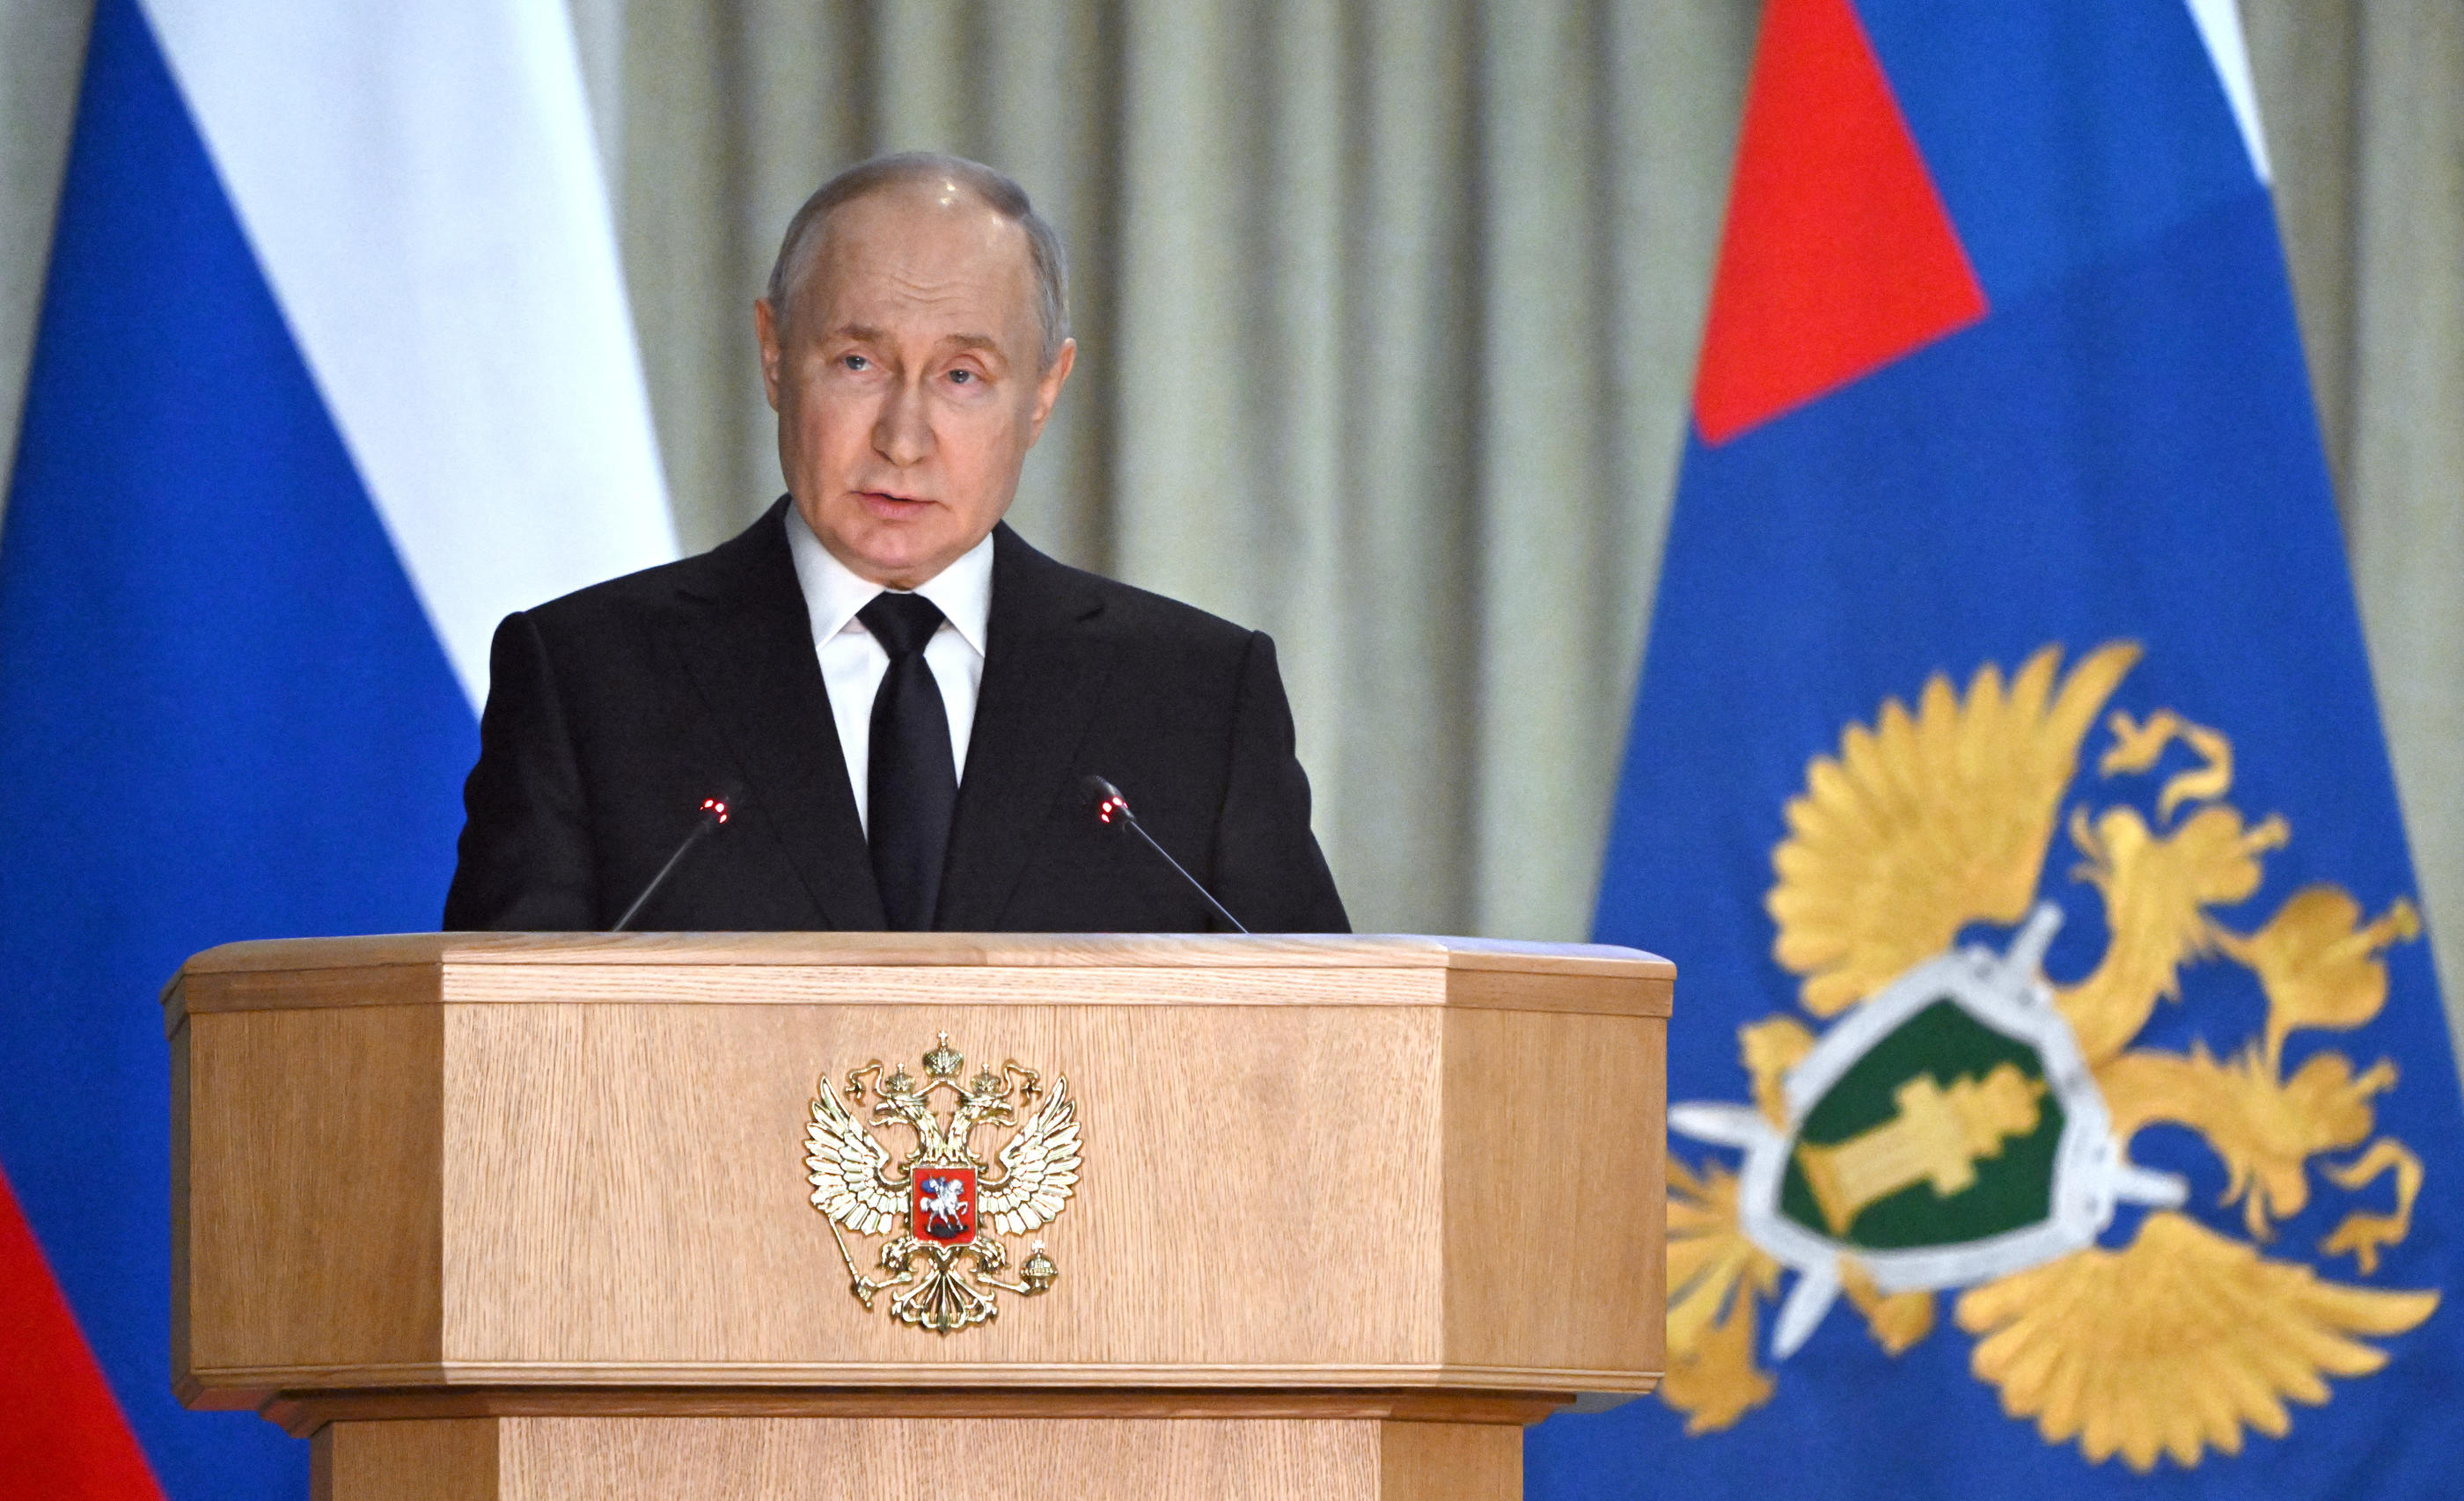 Le président russe Vladimir Poutine avait dénoncé un "chantage" après les alertes américaines. Reuters / Sputnik / Sergei Guneev